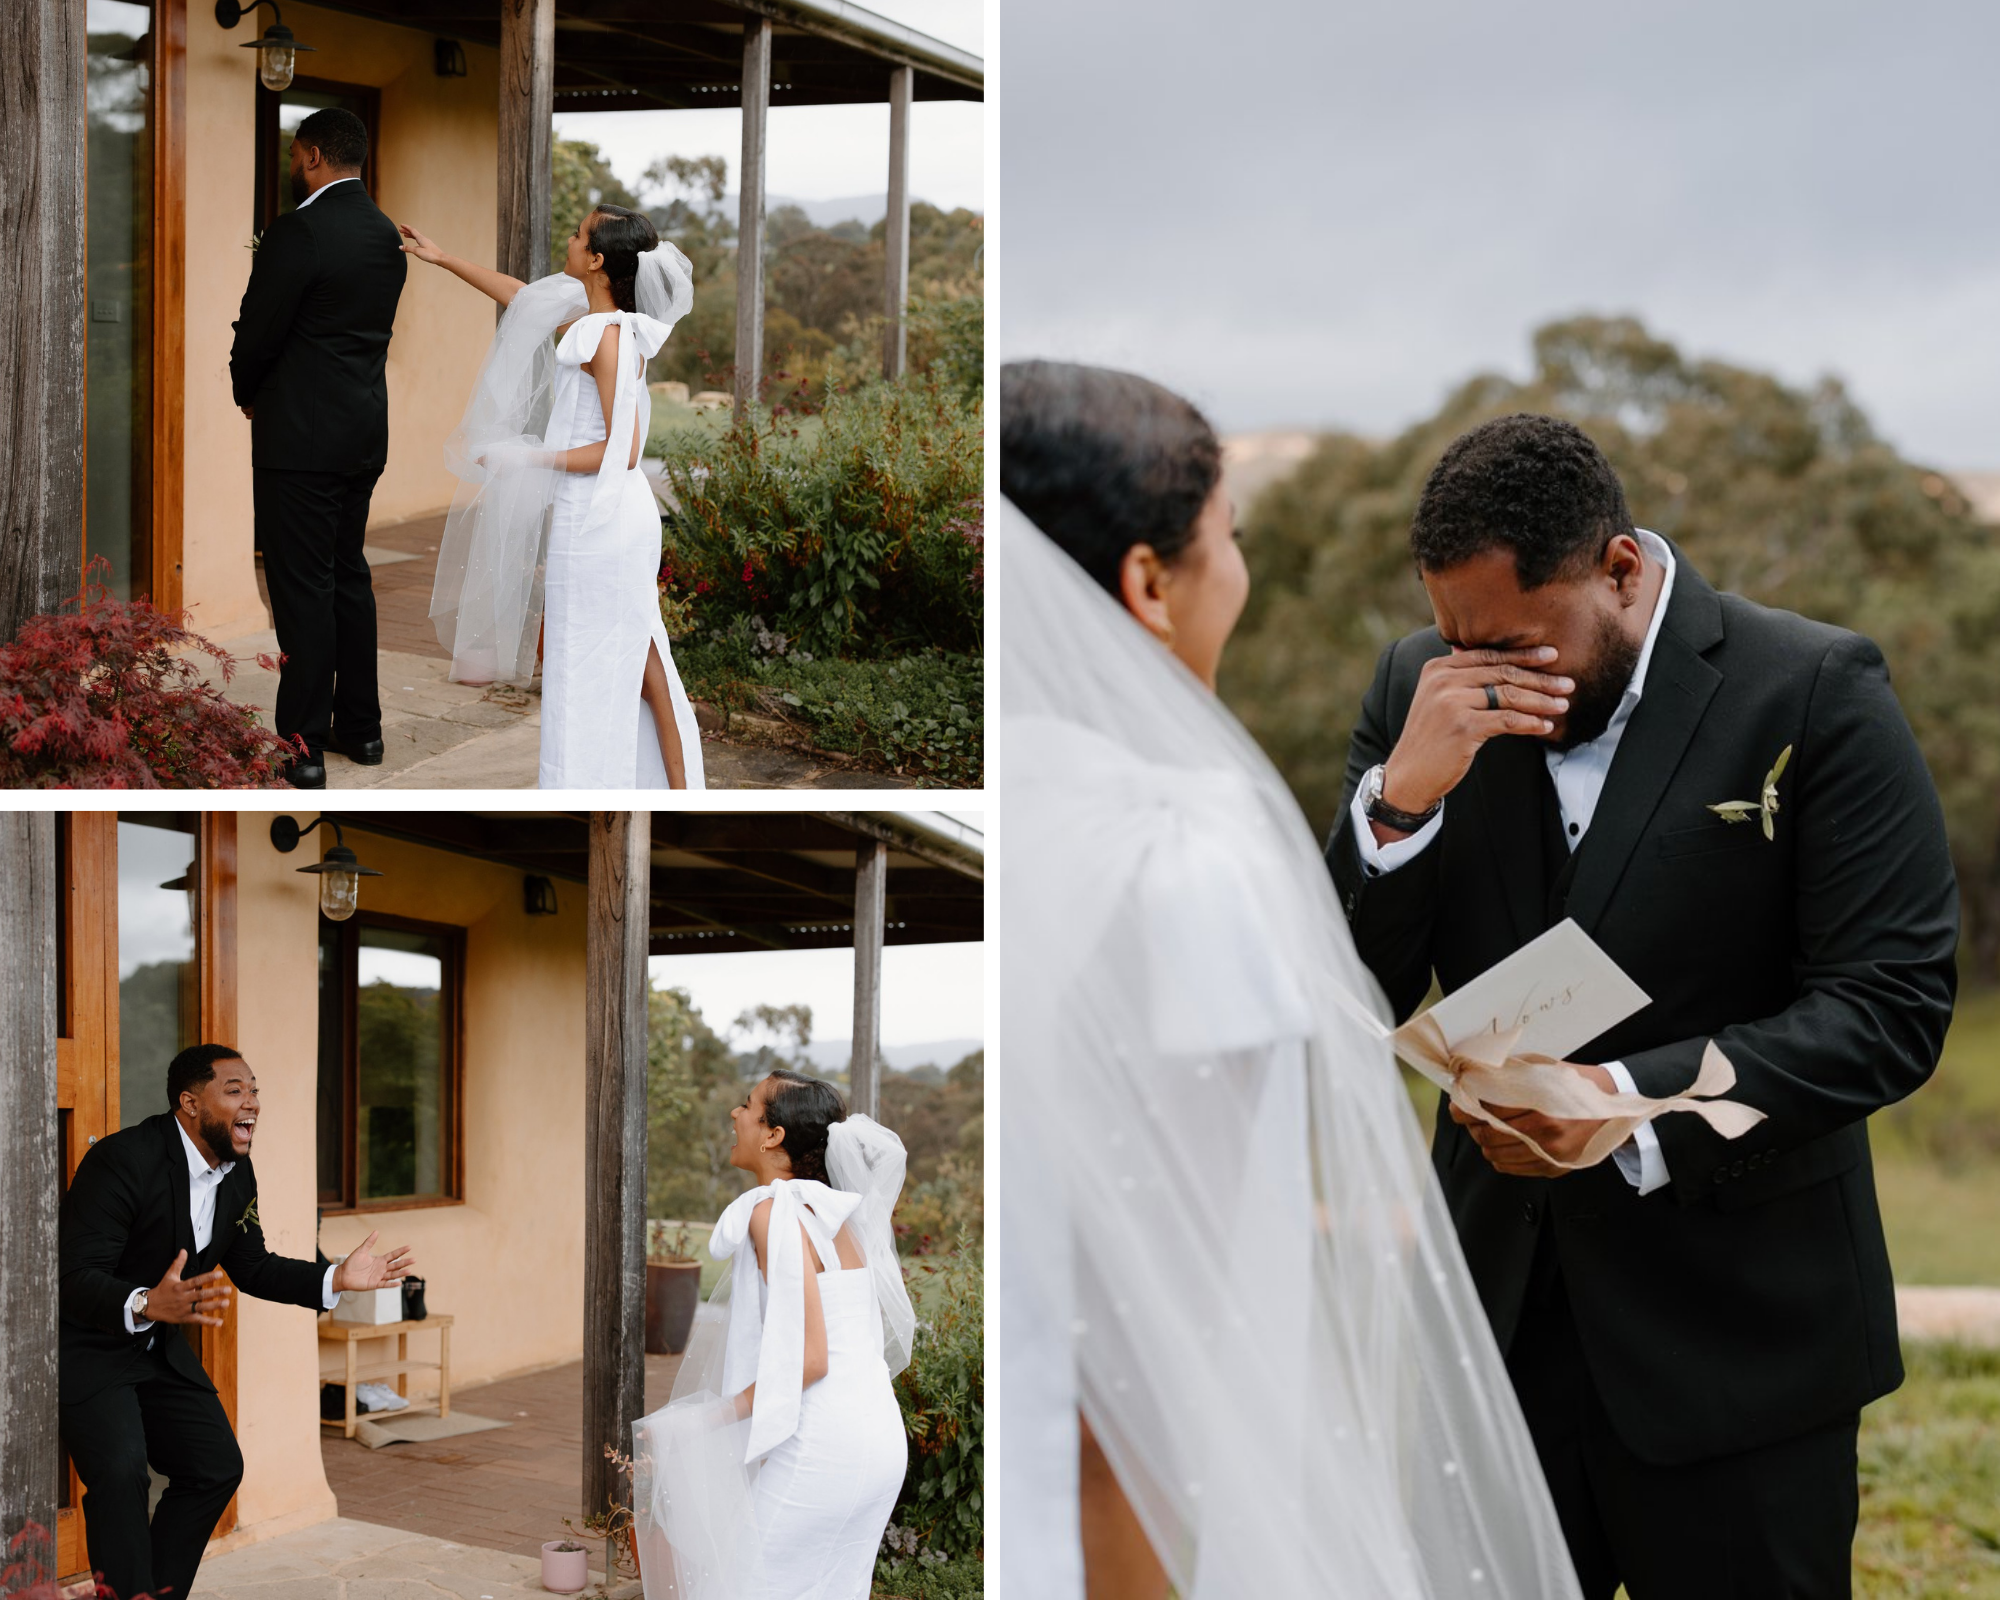 Meet Shutter Scope Wedding Photographers